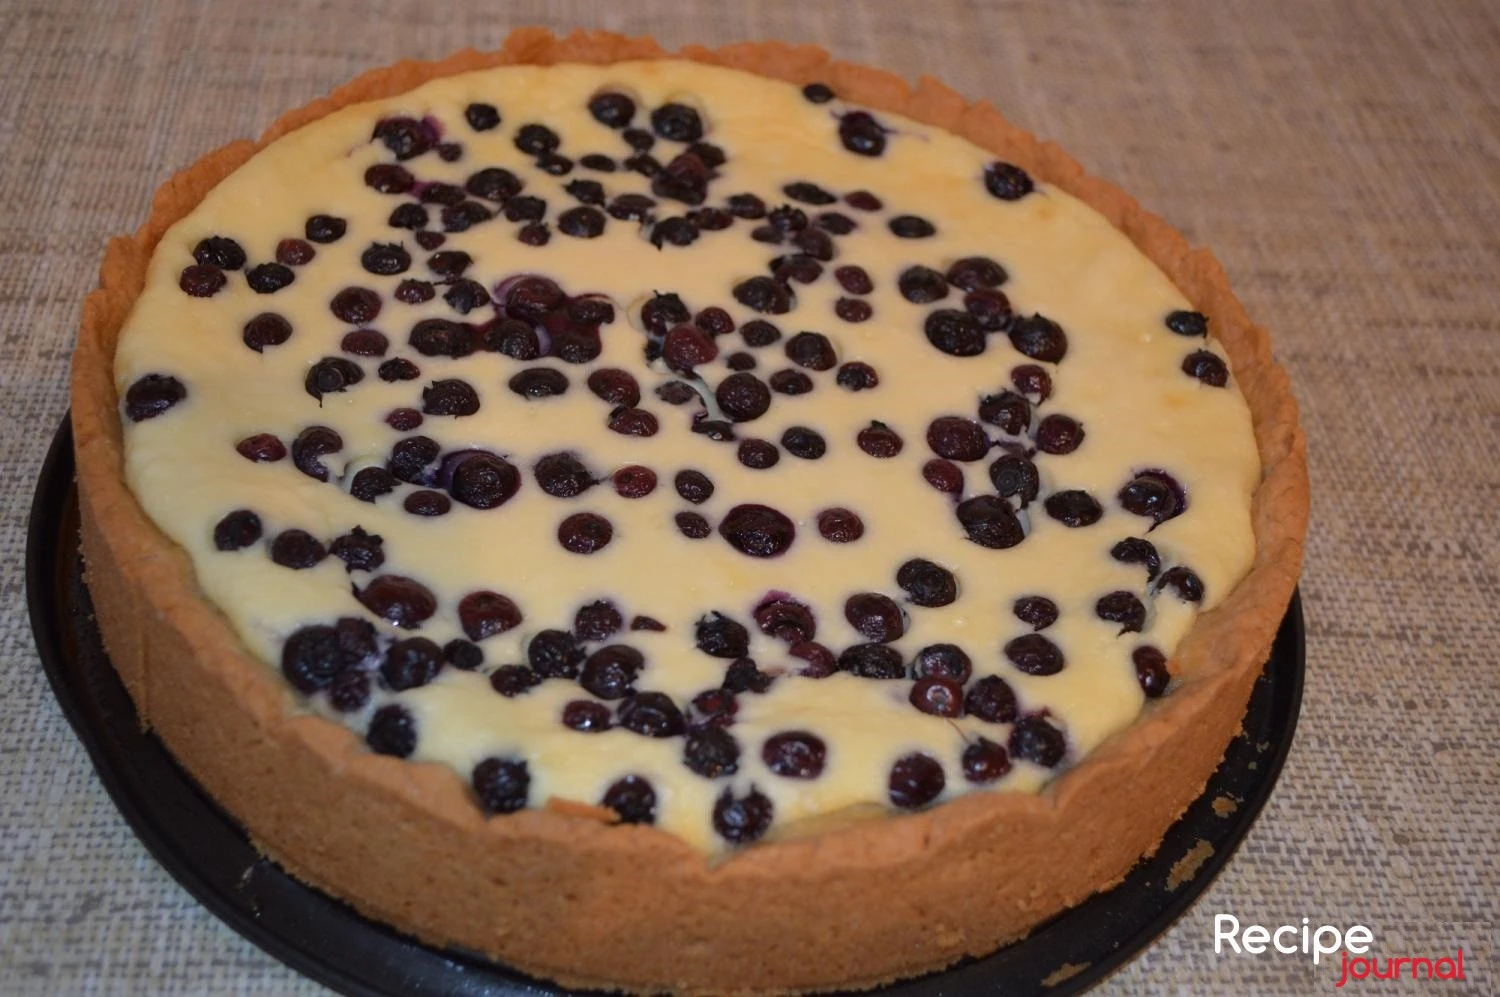 Финский творожный пирог с ягодами - рецепт вкусной выпечки